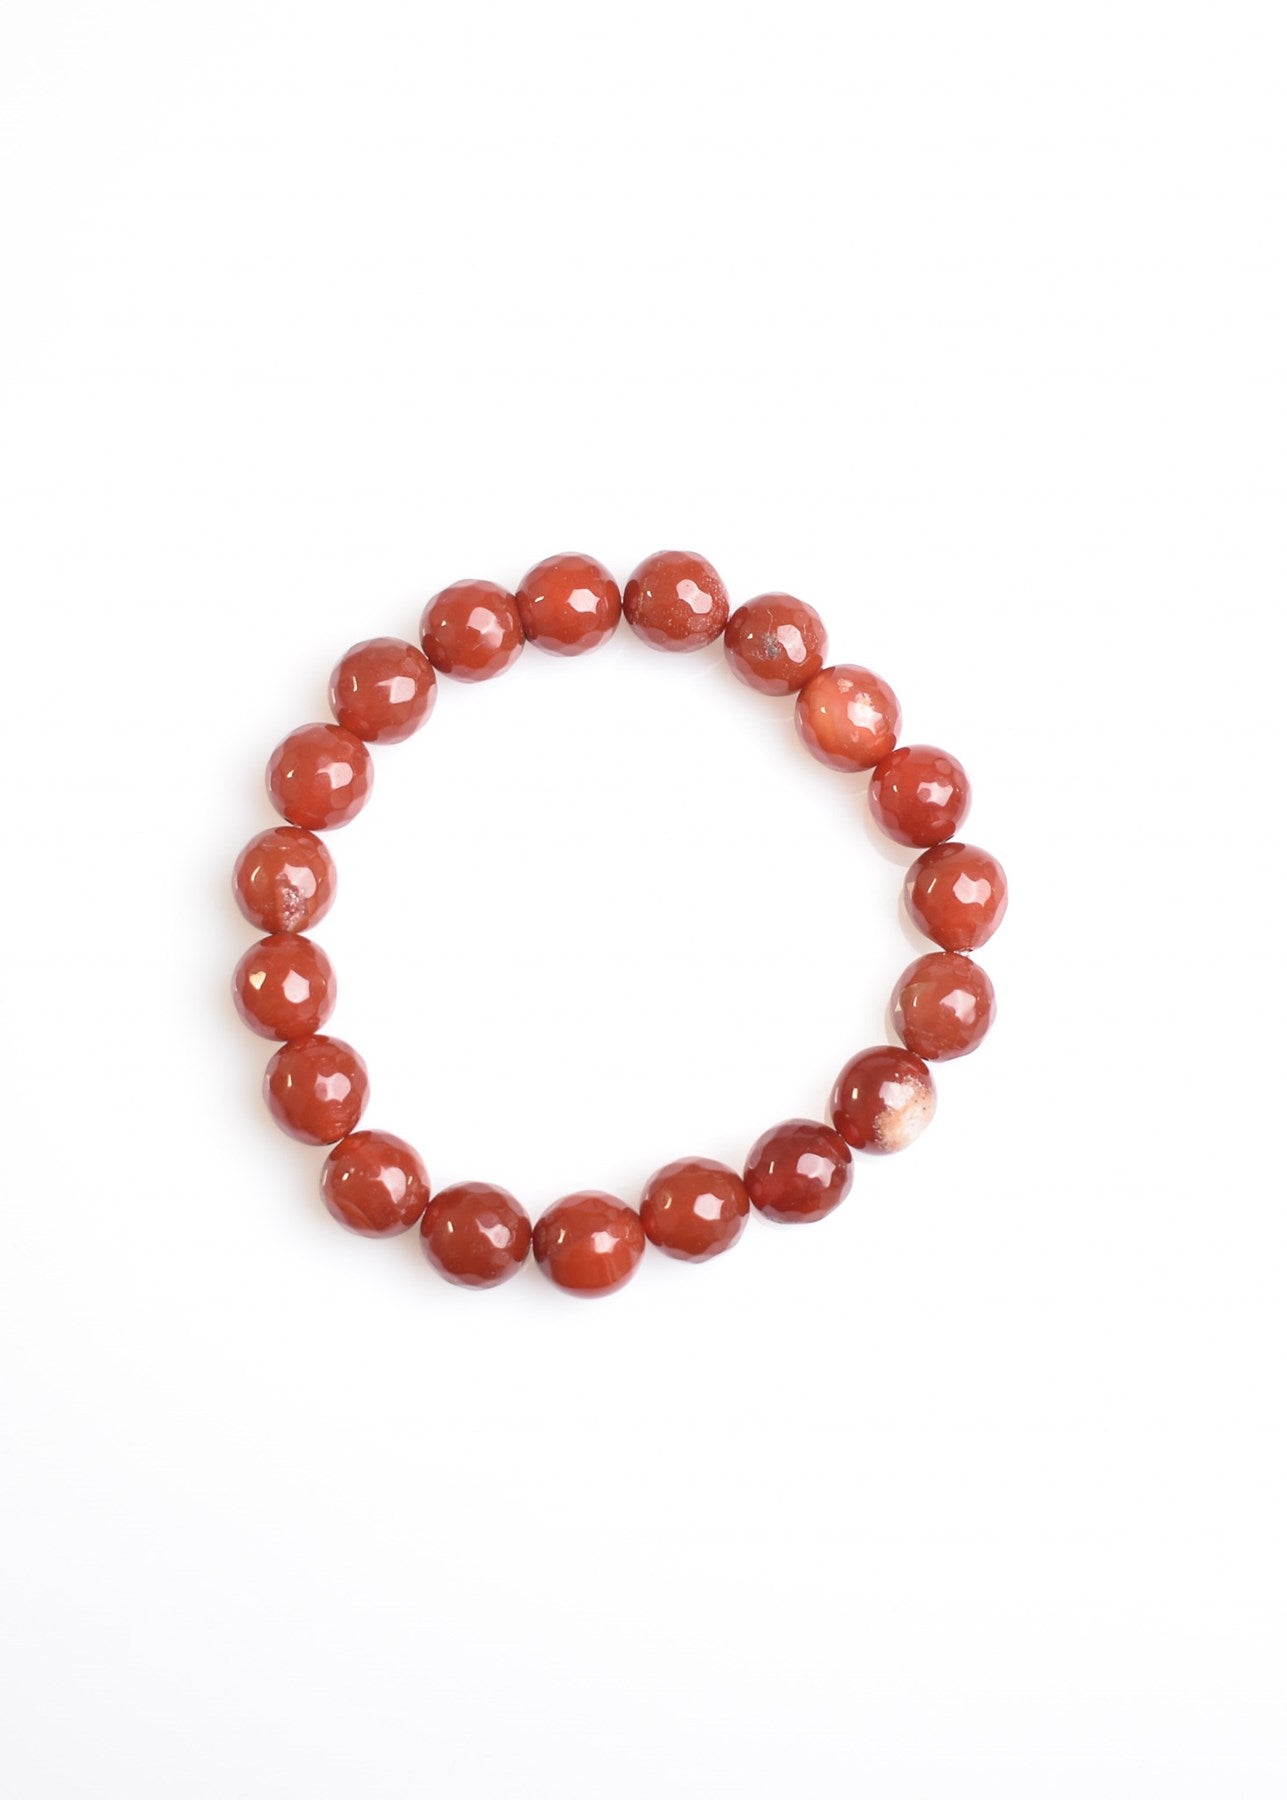 Red Agate Natural Gemstone Bracelet 10mm